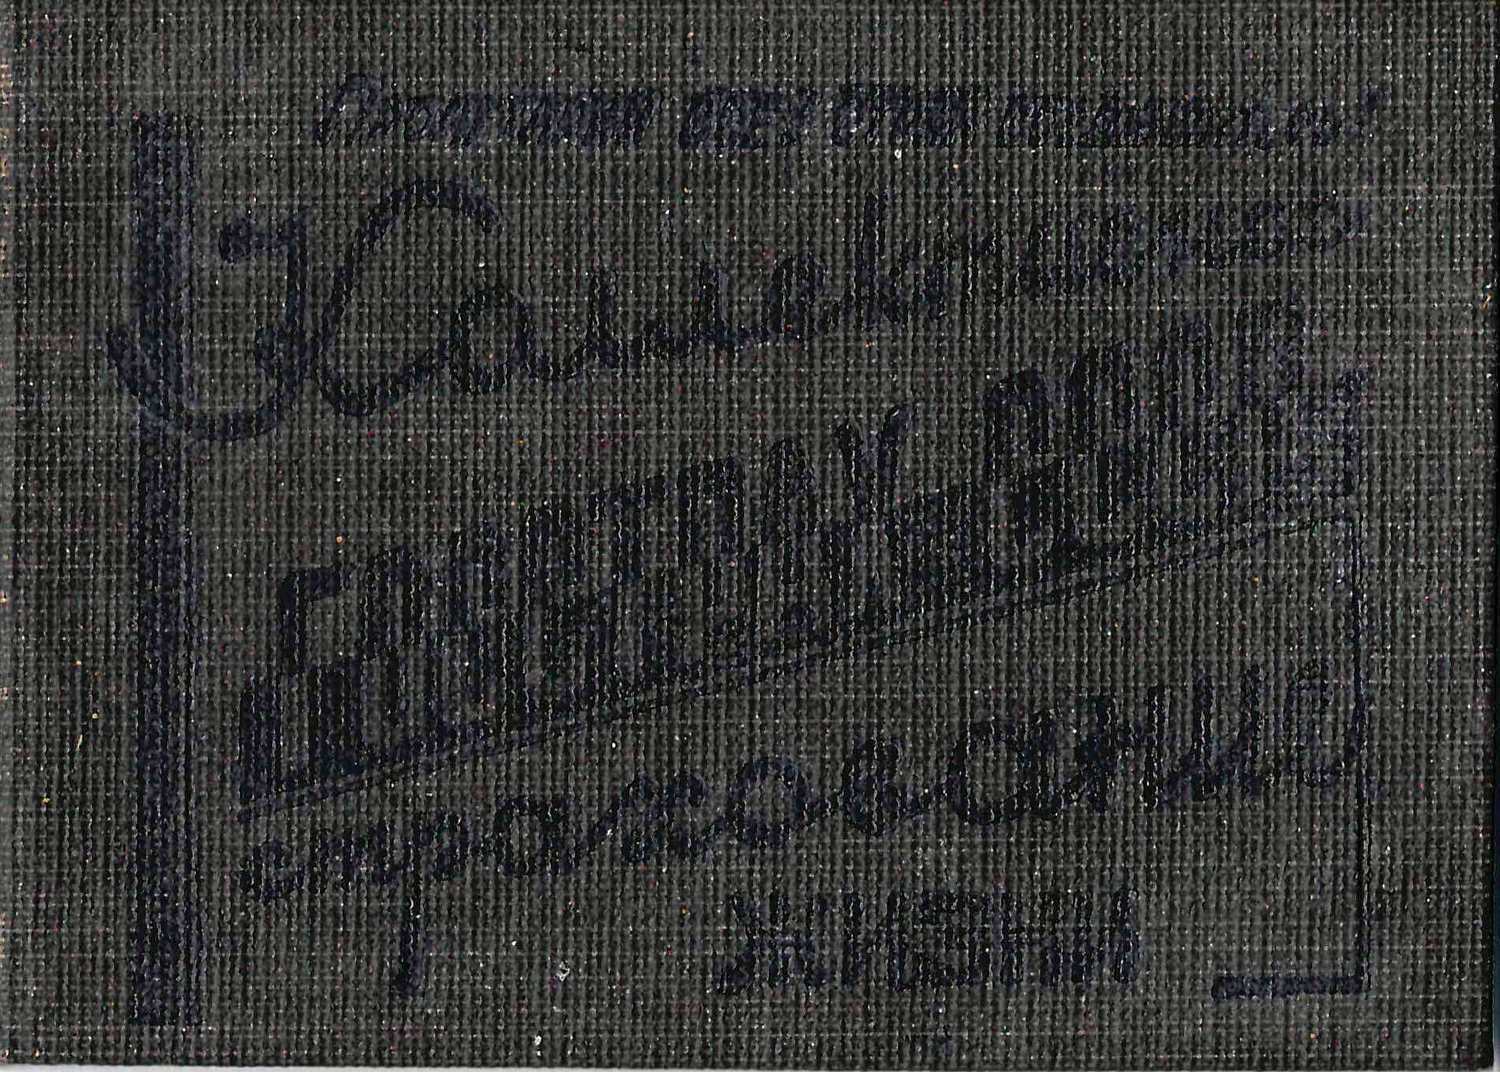 Удостоверение Госстраха СССР «Коллективное страхование жизни». Выдано 13 декабря 1936 года.